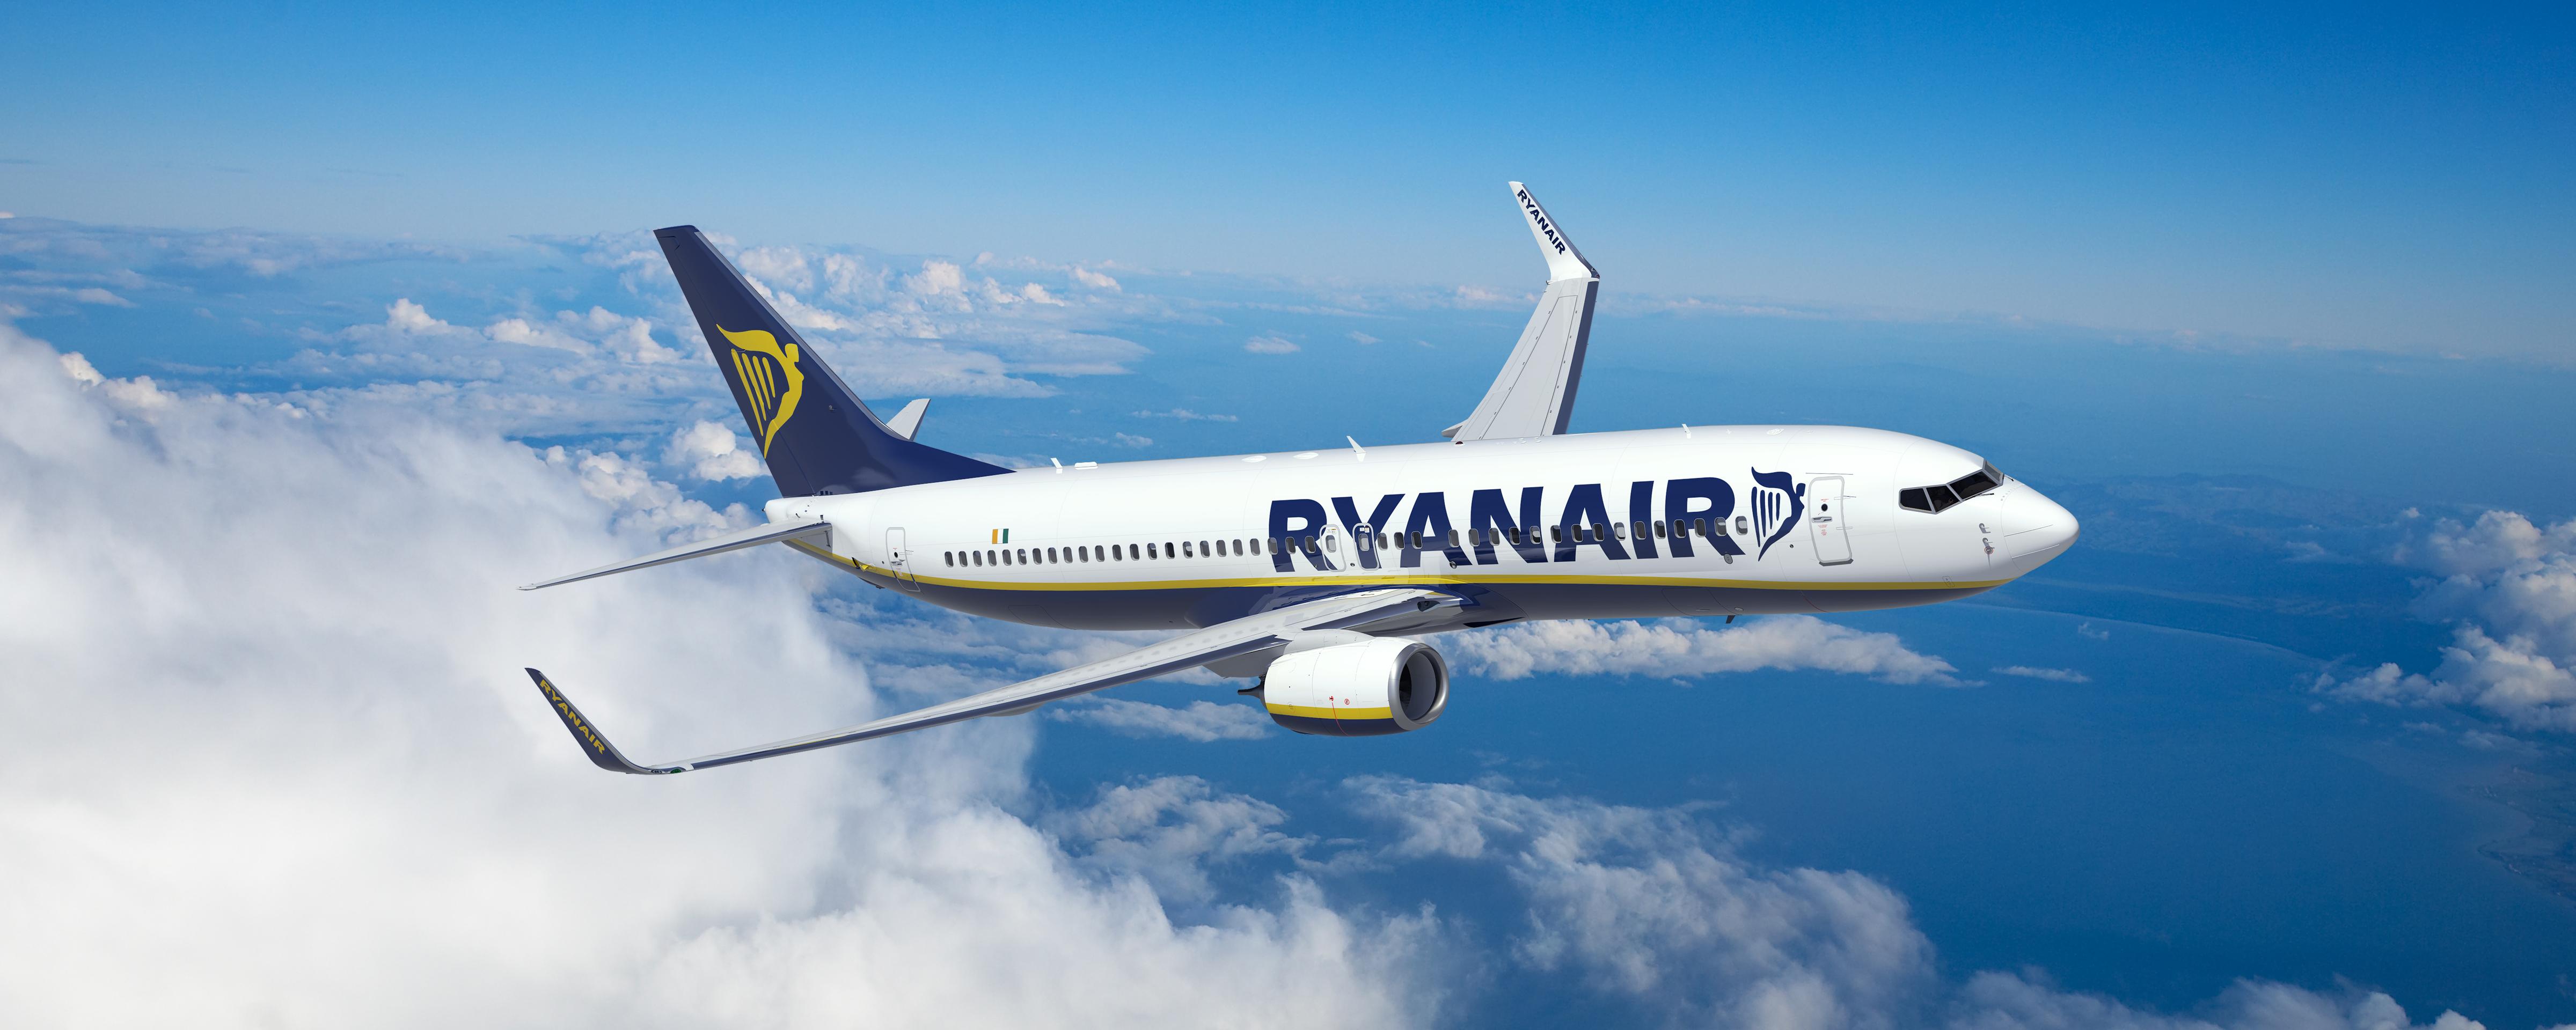 Η Ryanair Ανακοινωνει Νεο Δρομολογιο Απο Τη Μυκονο Προς Το Μπορντο